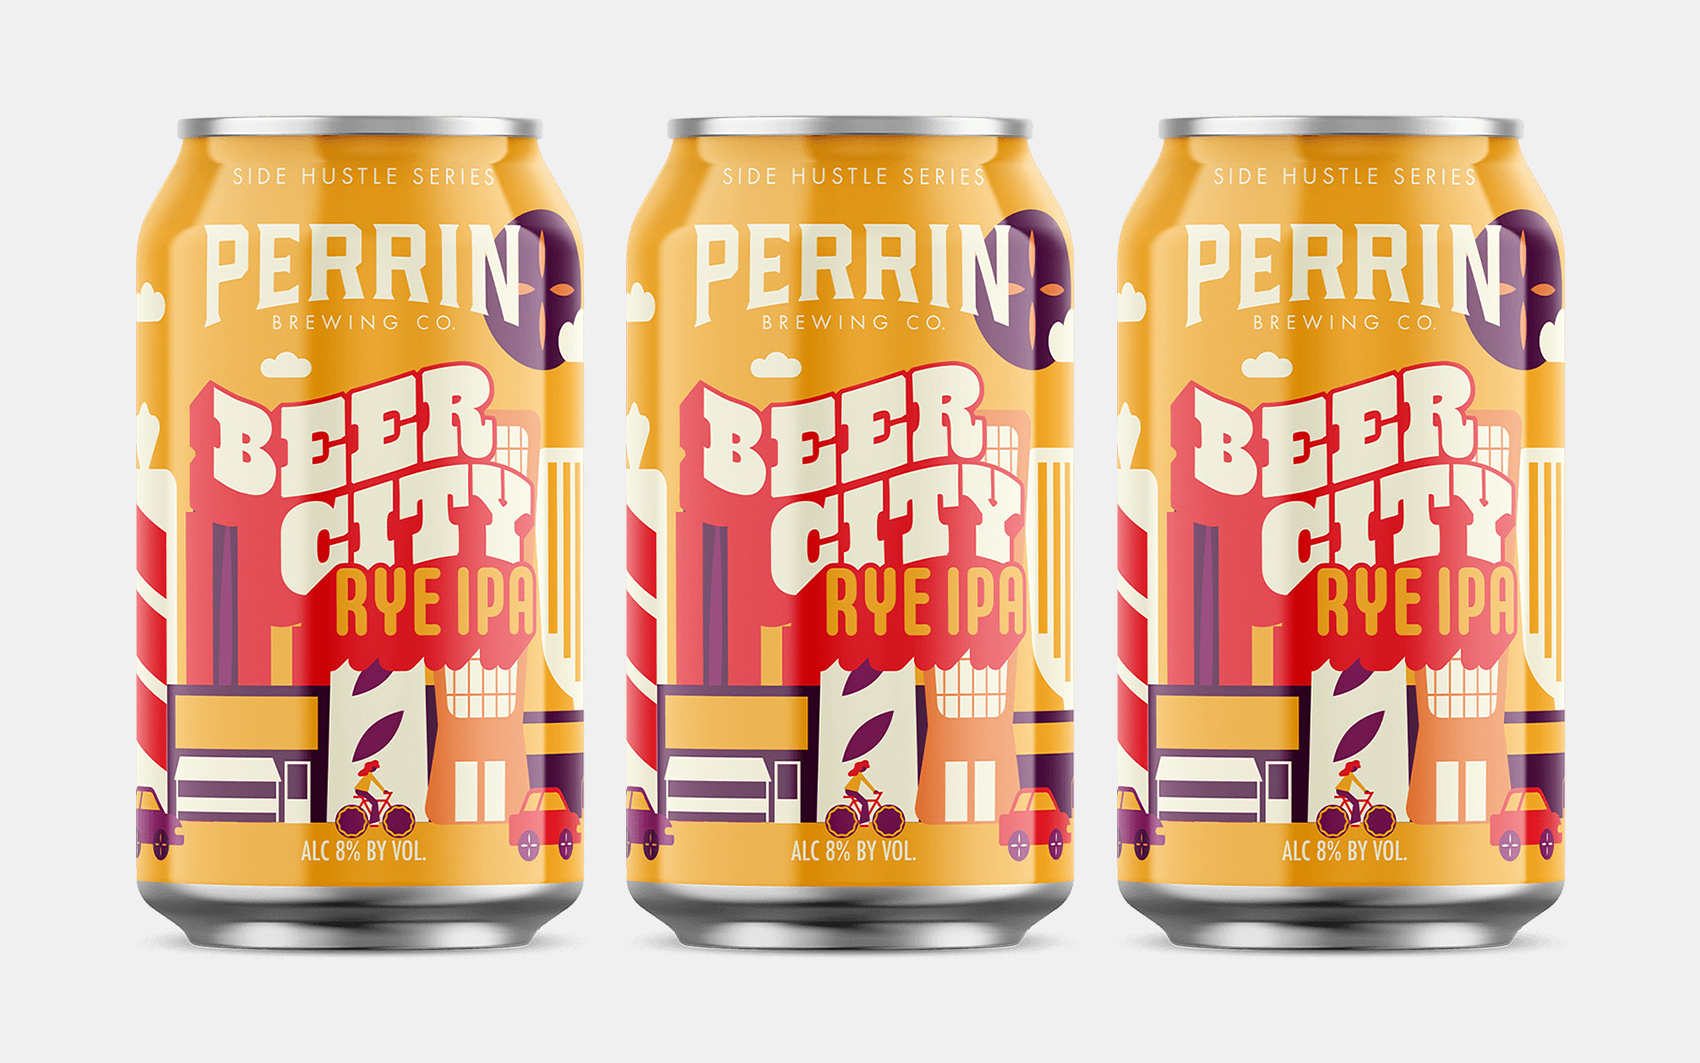 Perrin Beer City Rye IPA